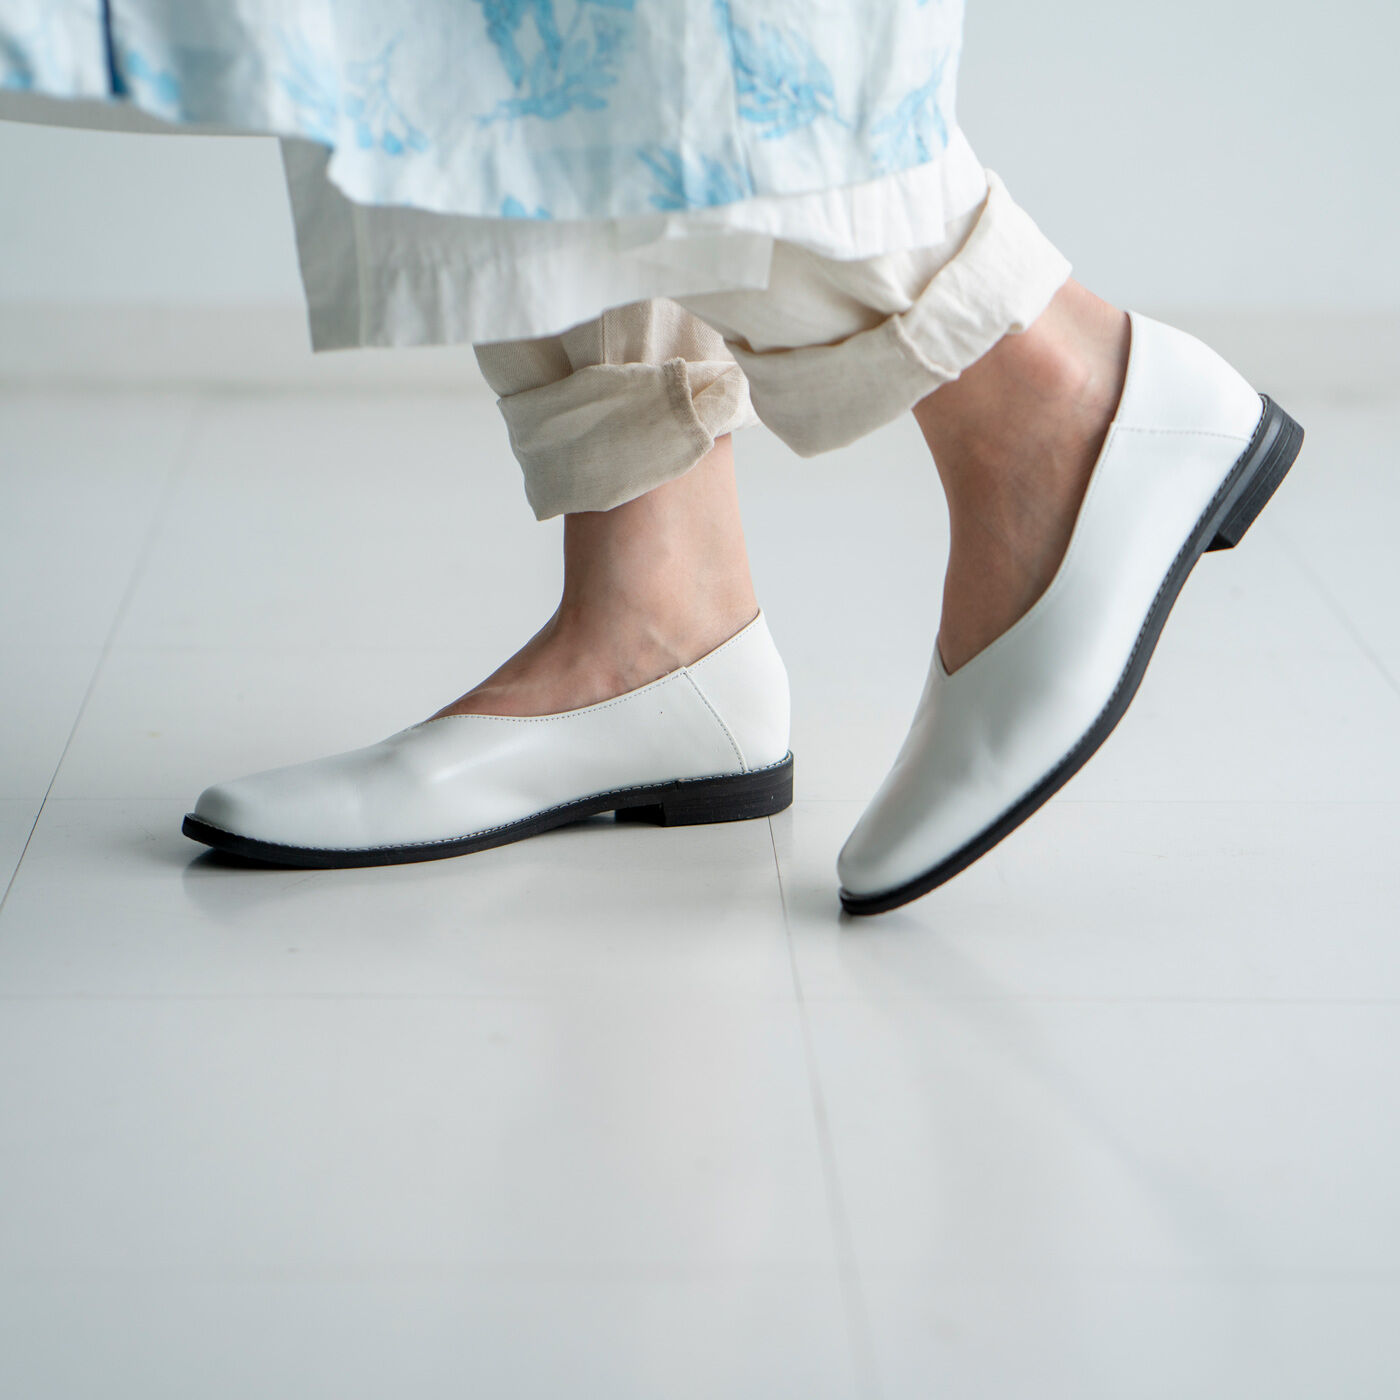 ＆Stories|長田の靴メーカーと作った　職人本革のスクエアノーズシューズ〈ホワイト〉|スクエアトゥはやや長めのノーズでエレガントさが際だつ印象に。